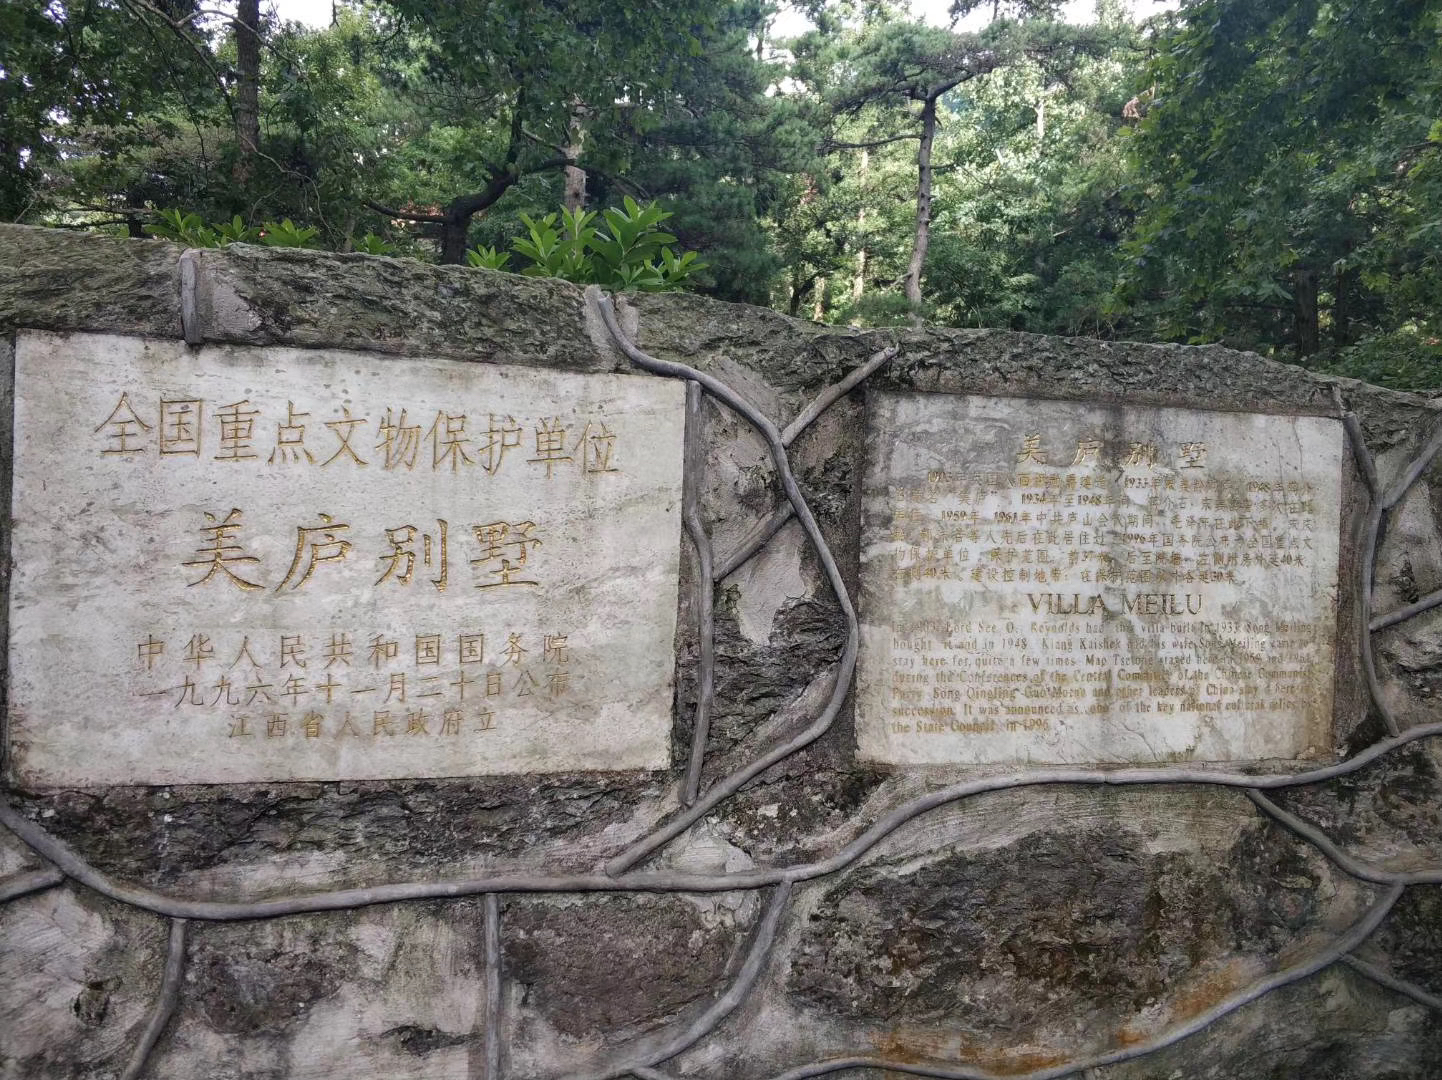   庐山 ，大概是最受 中国 文人偏爱的一座山。历史上很多位文人留下无数首关于 庐山 的诗词。“不识